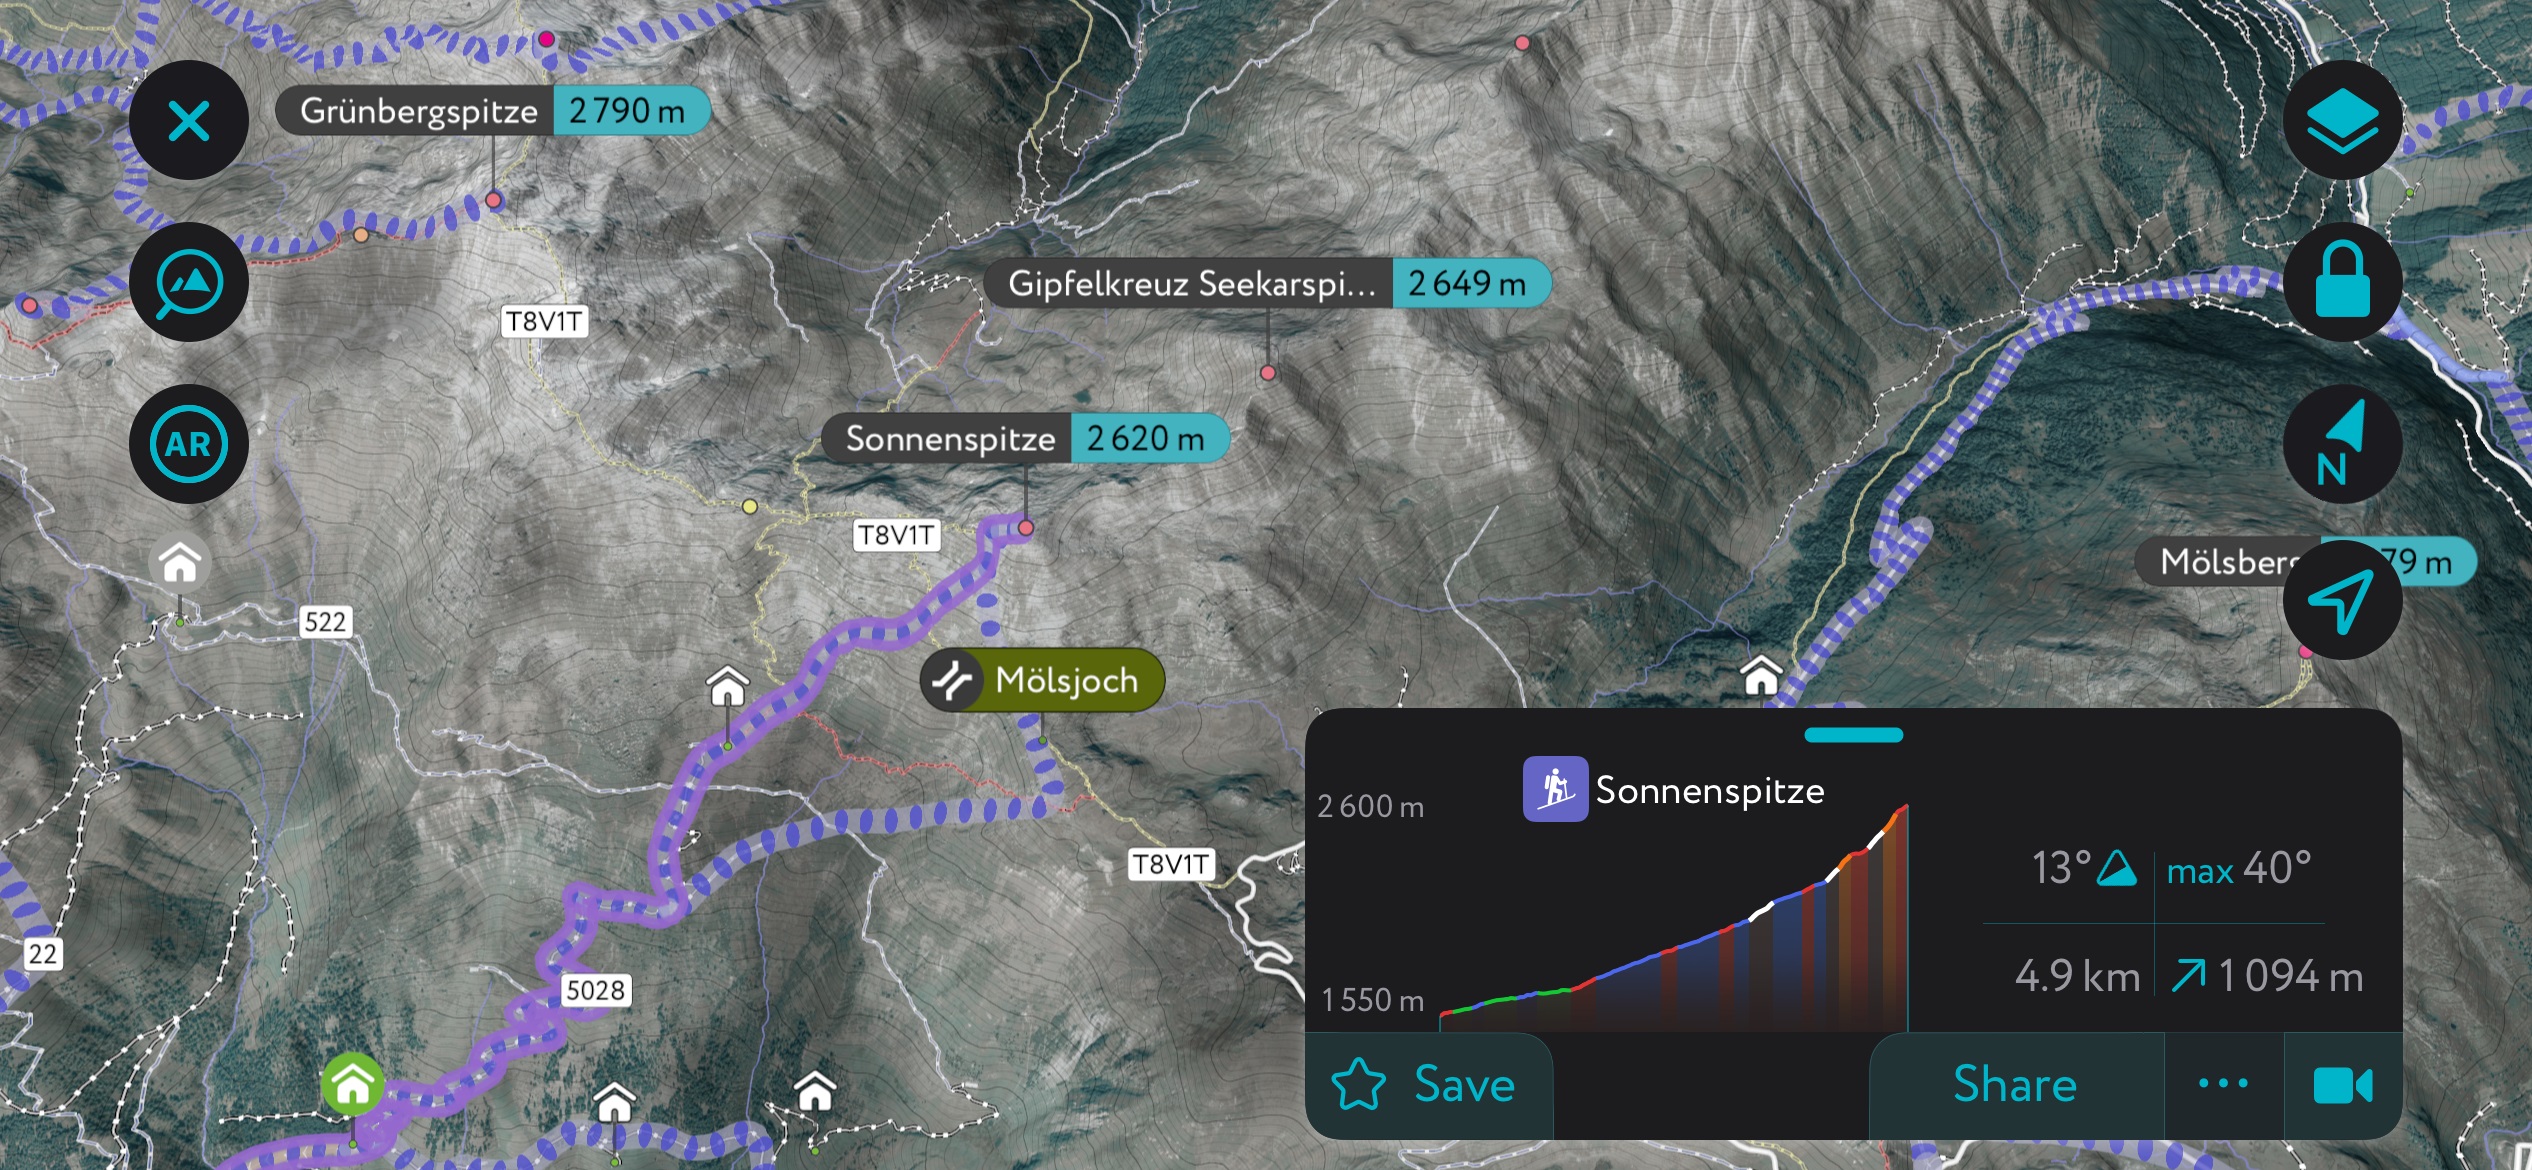 The Sonnenspitze on PeakVisor’s mobile app. Tux Alps